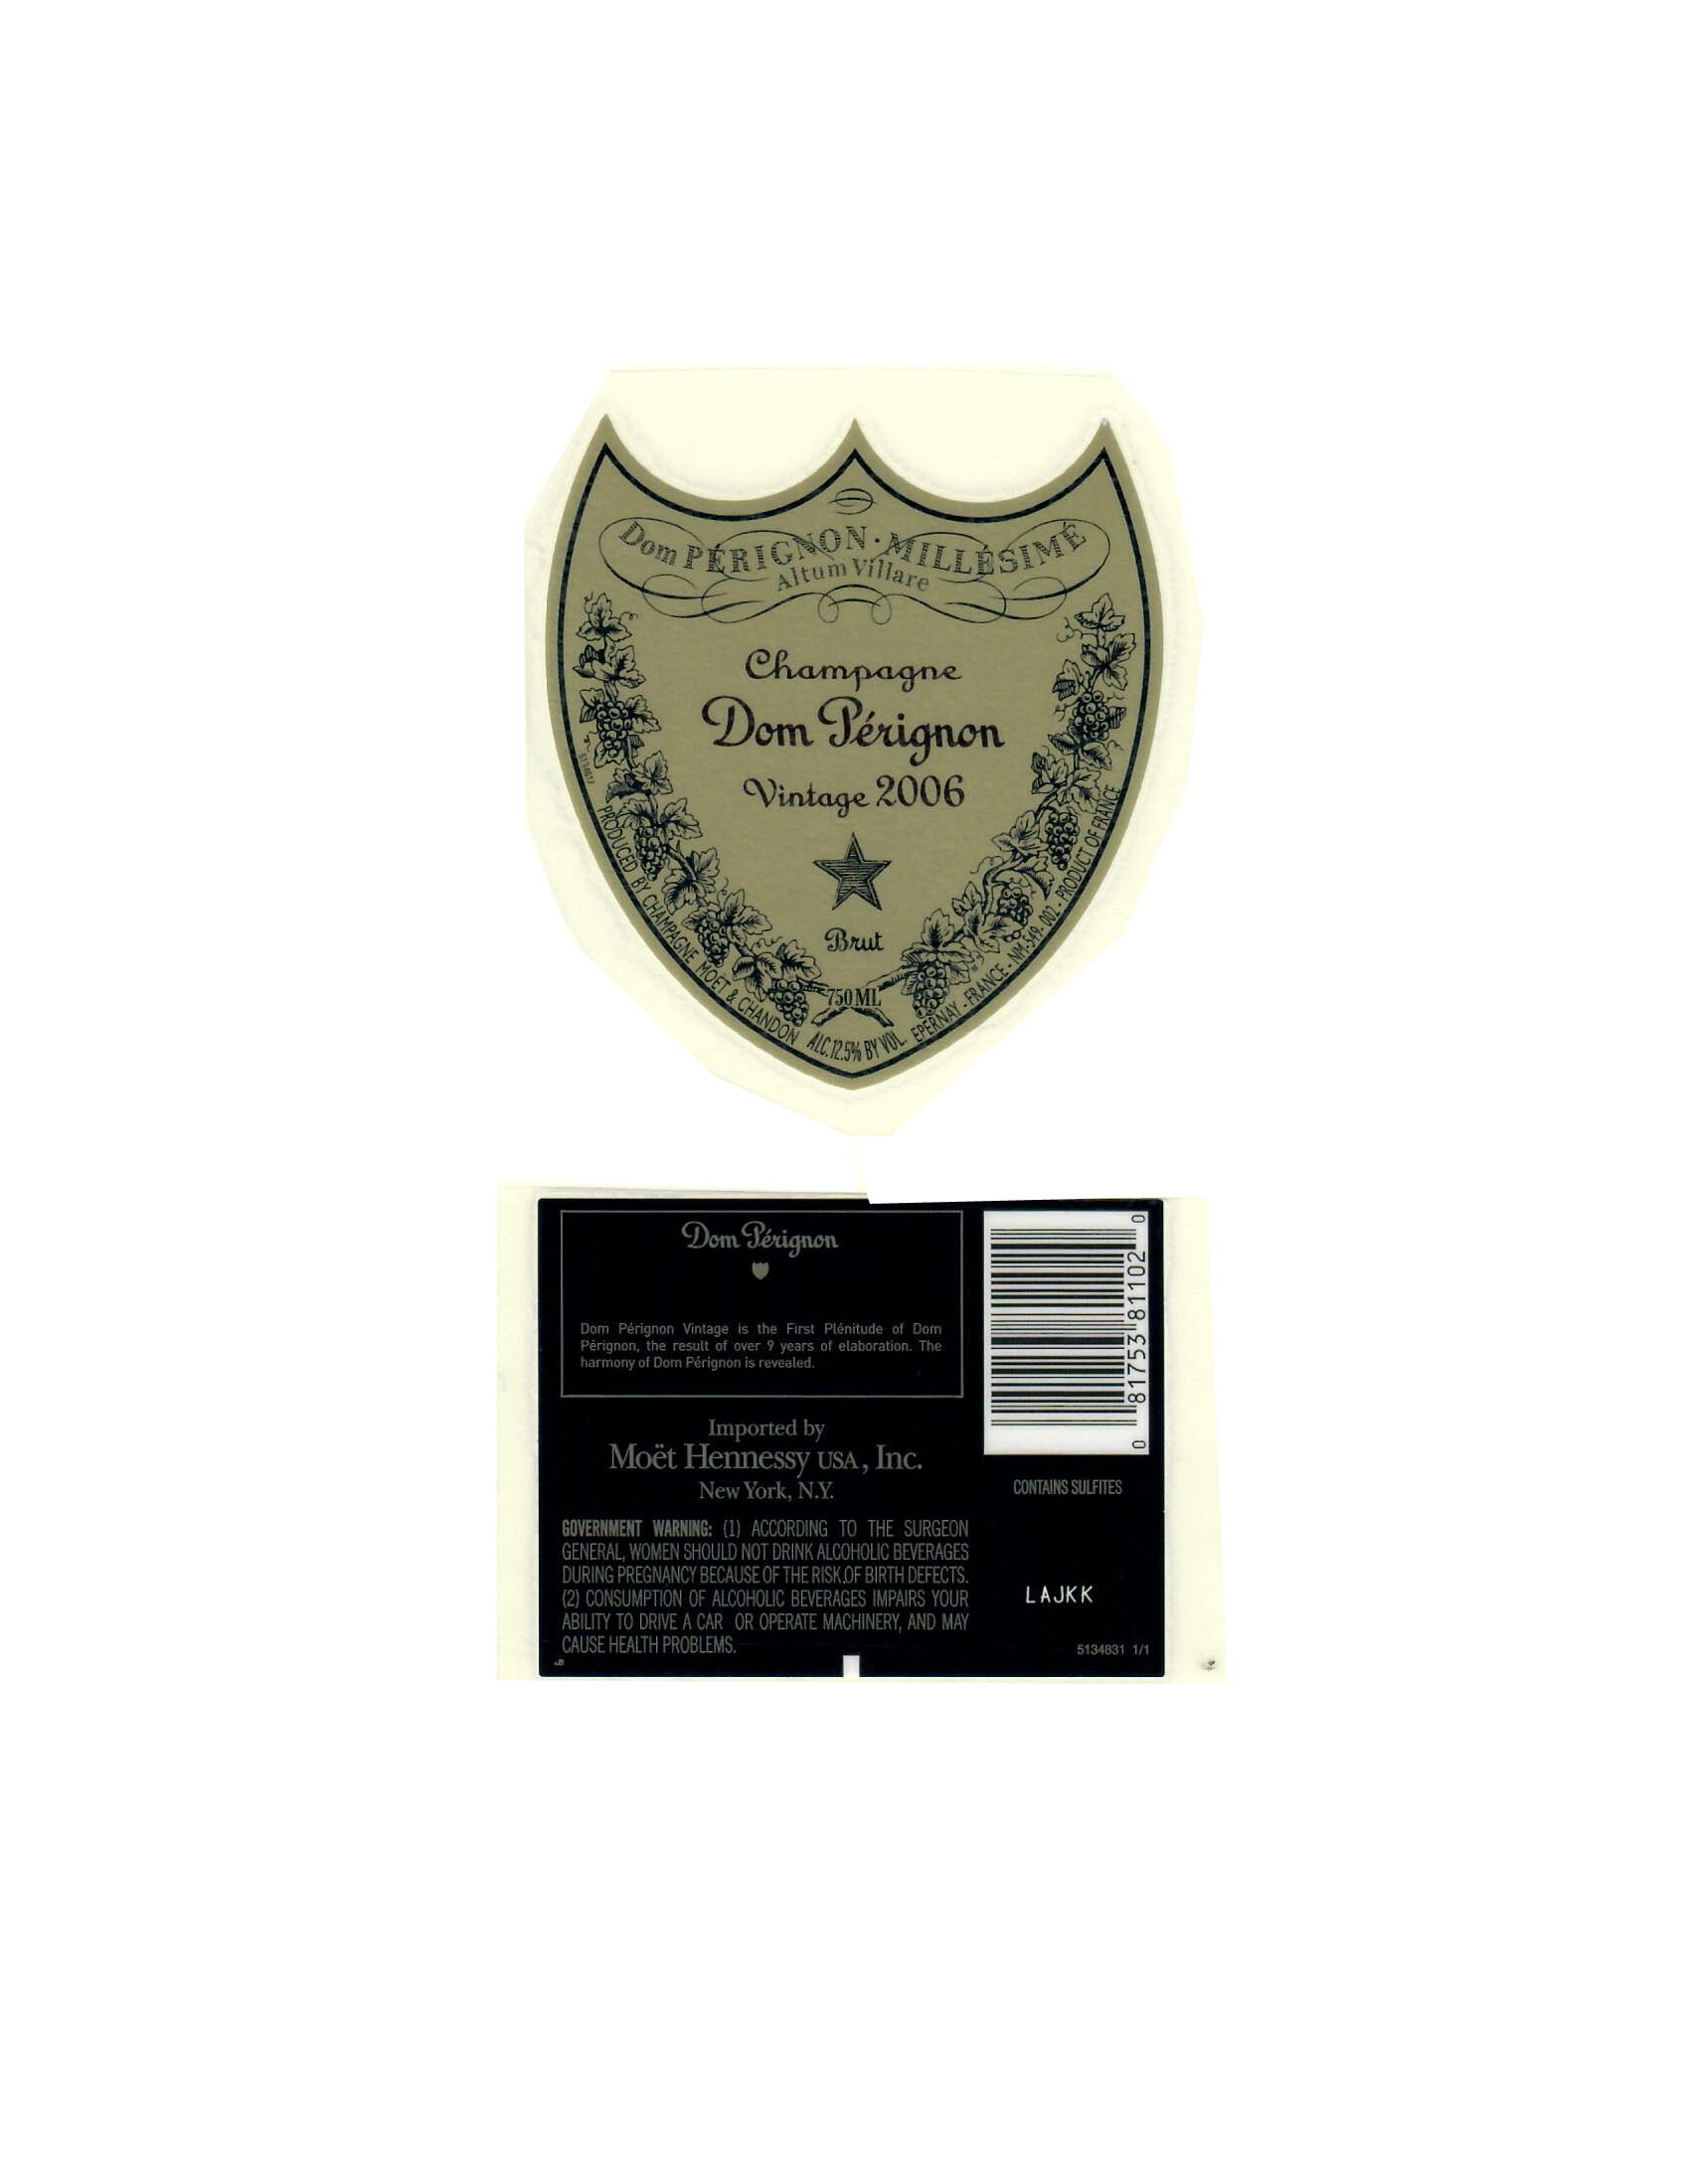 Moet Hennessy USA Inc – New York NY – Taste Album, by Medium Plus